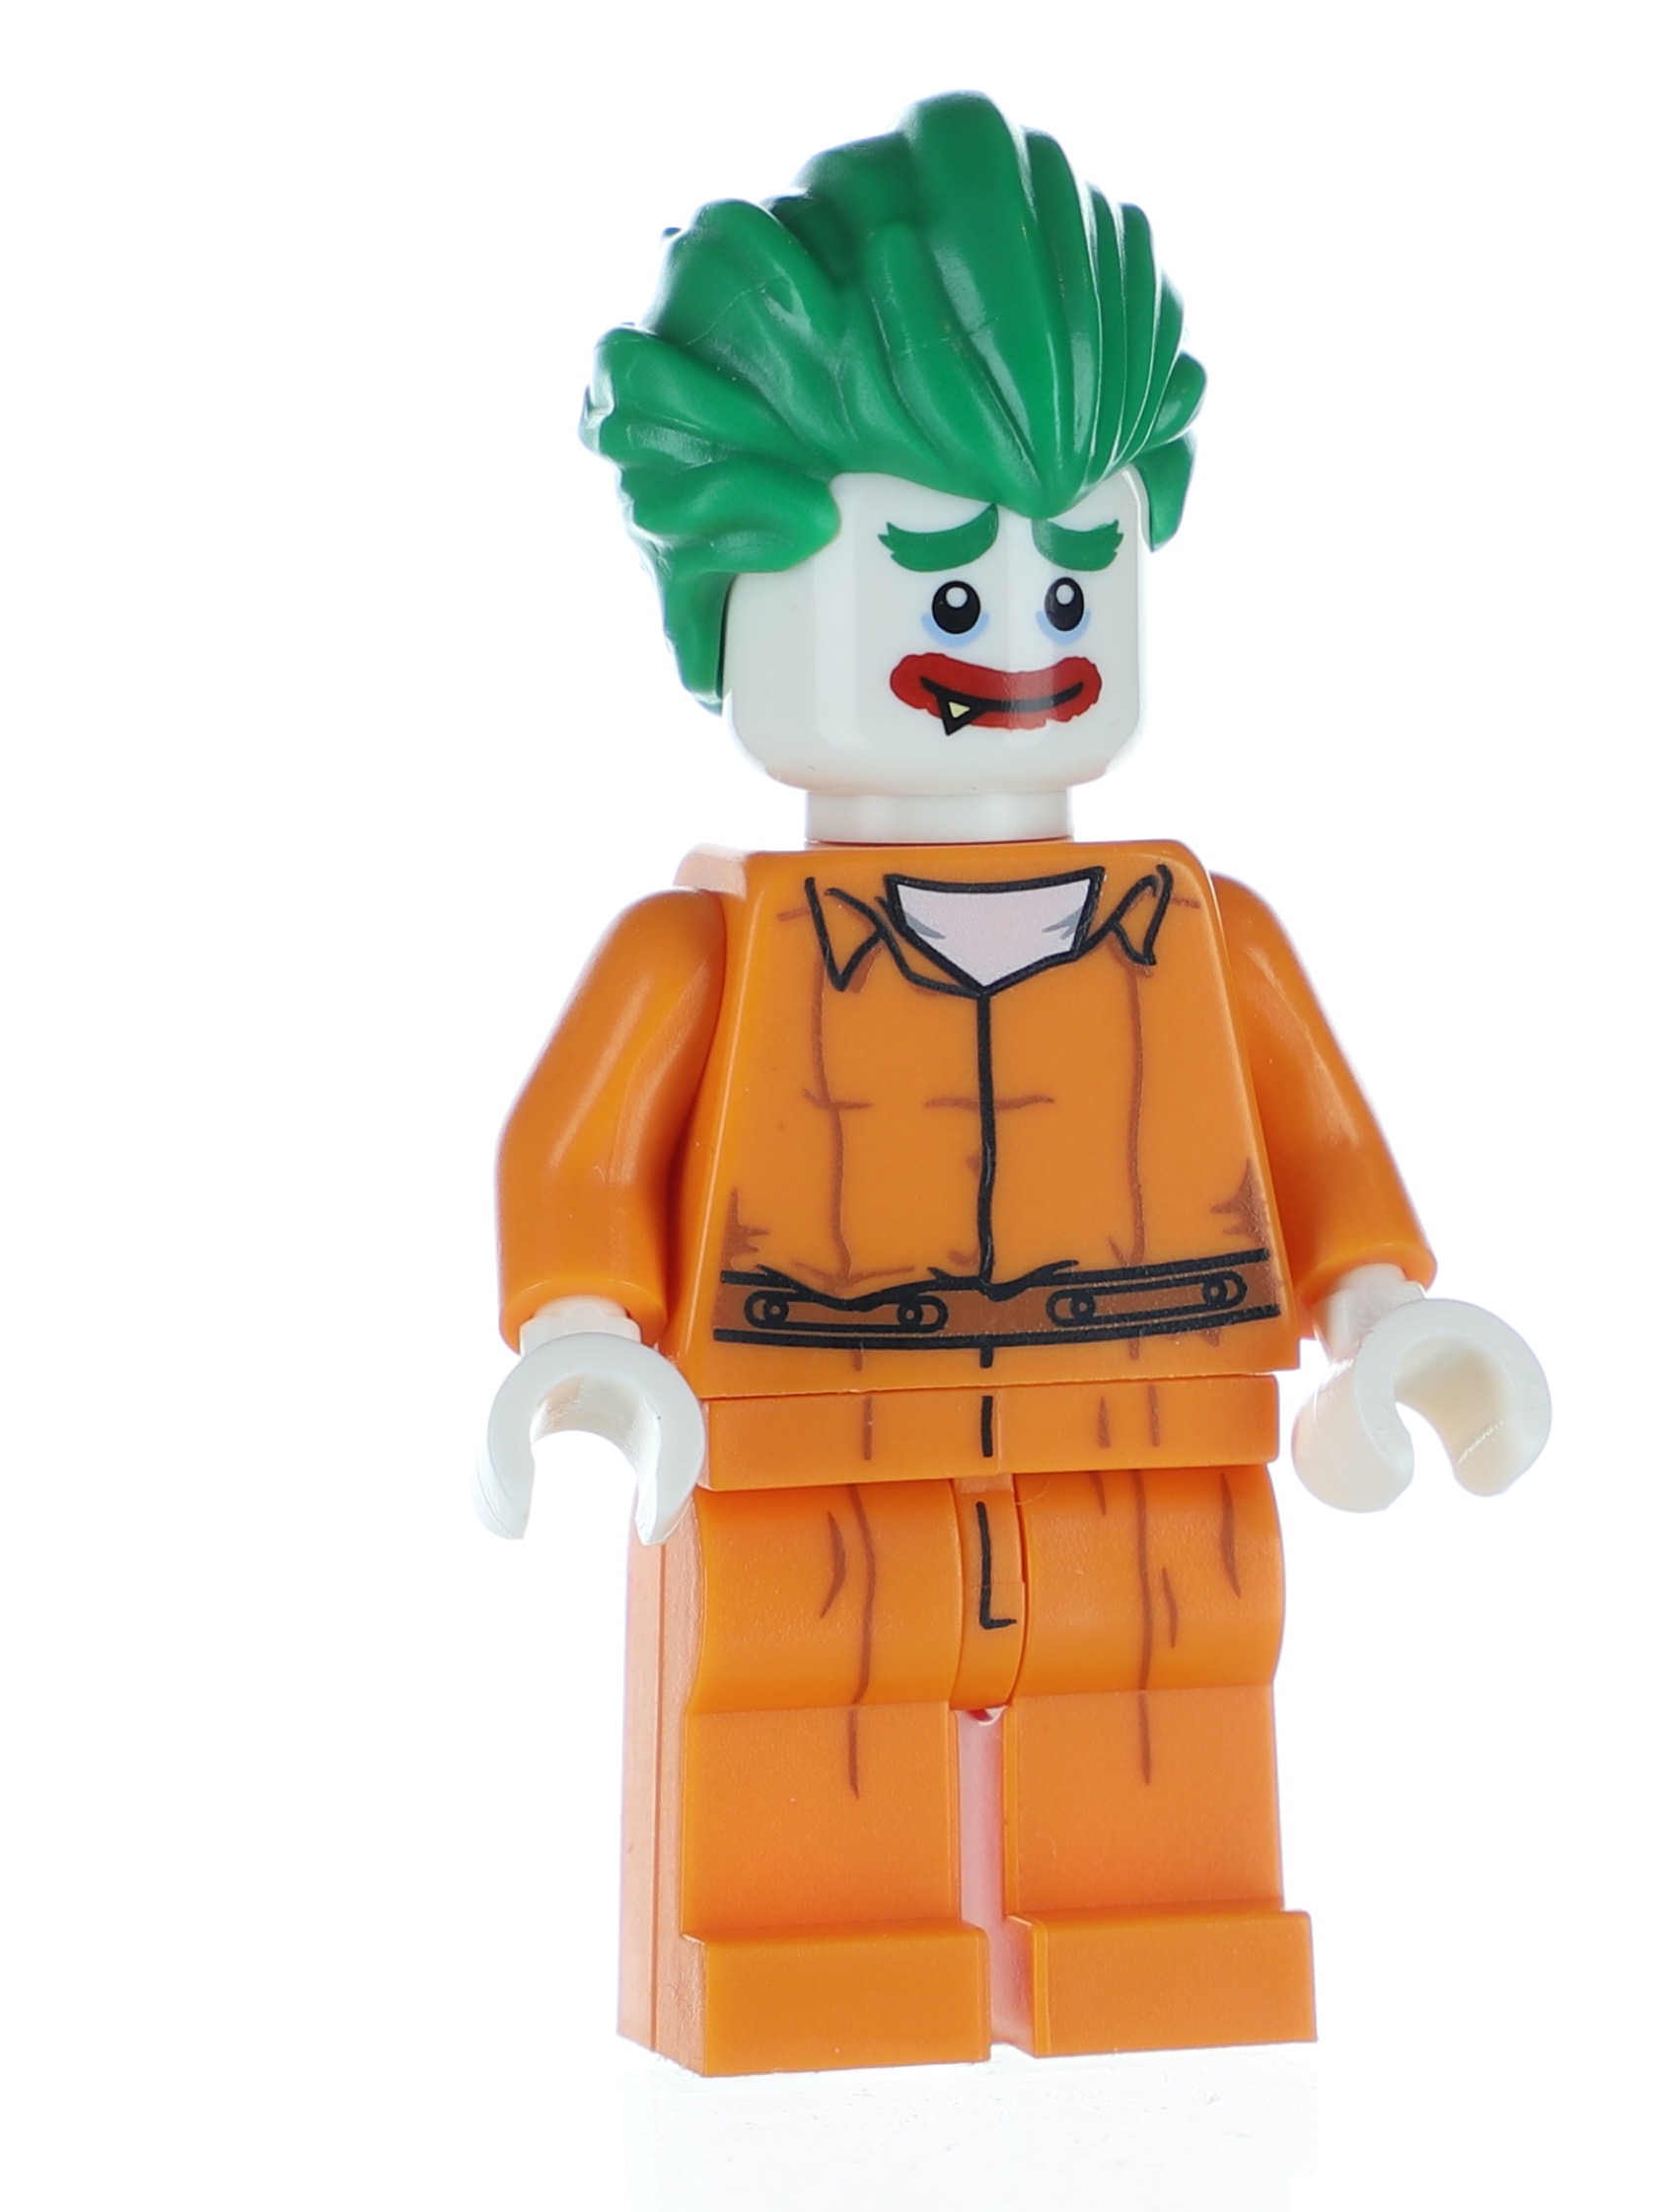 Lego Batman Movie Series Arkham Asylum Joker MINIFIGURES 71017-8 NEW 